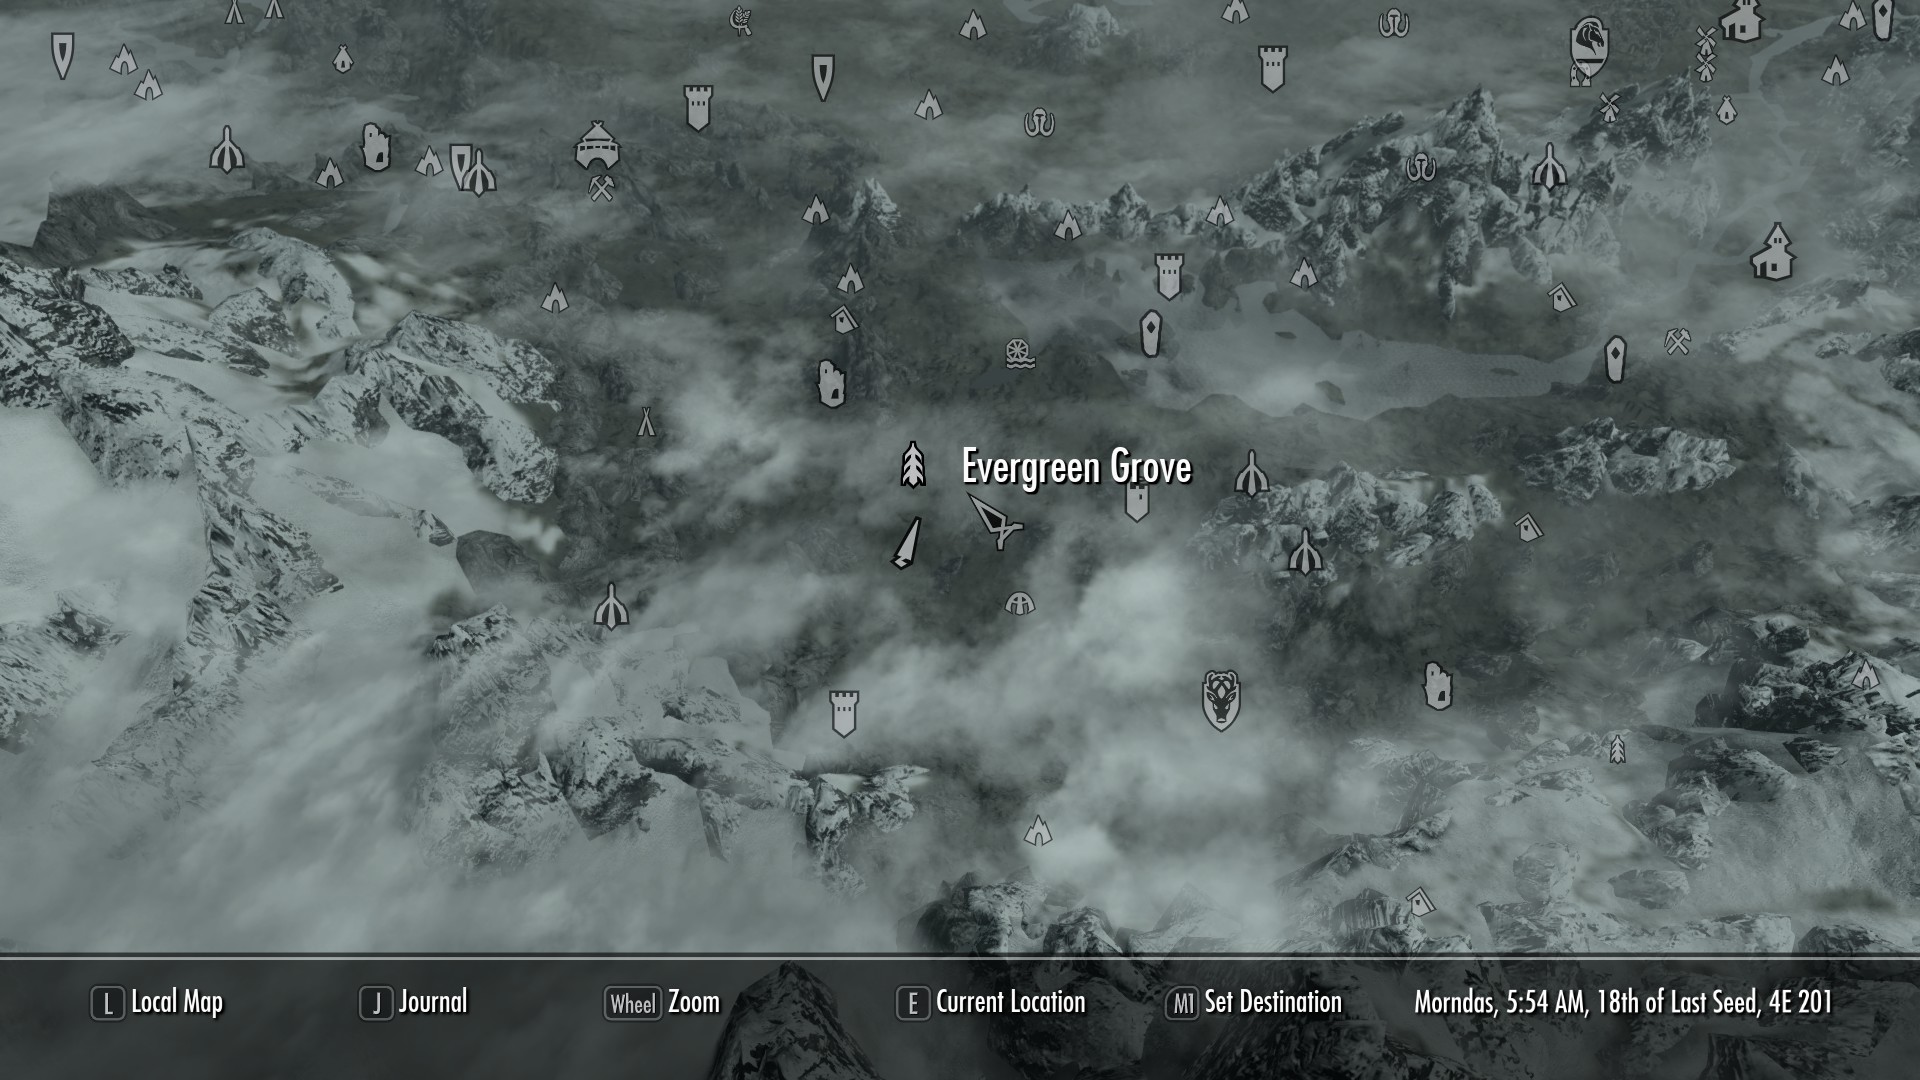 The Elder Scrolls V: Skyrim Special Edition Wild Horses Location Guide - Black Horse - 6E7B433